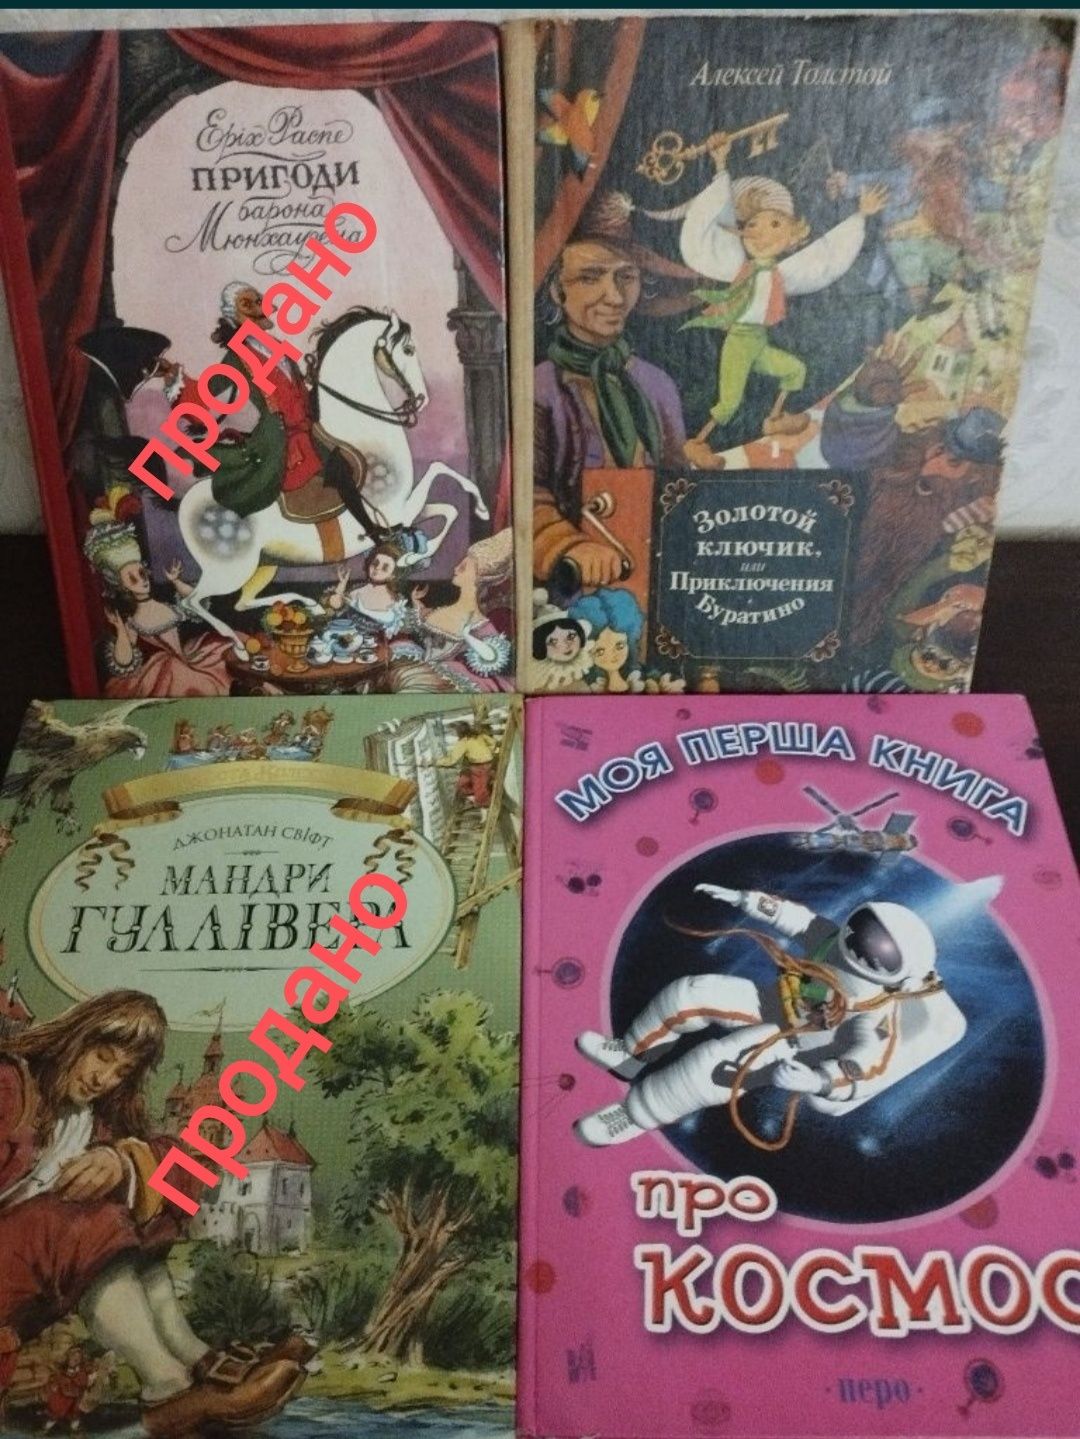 Дитячі книги: енциклопедії, пригоди, програмні, казки